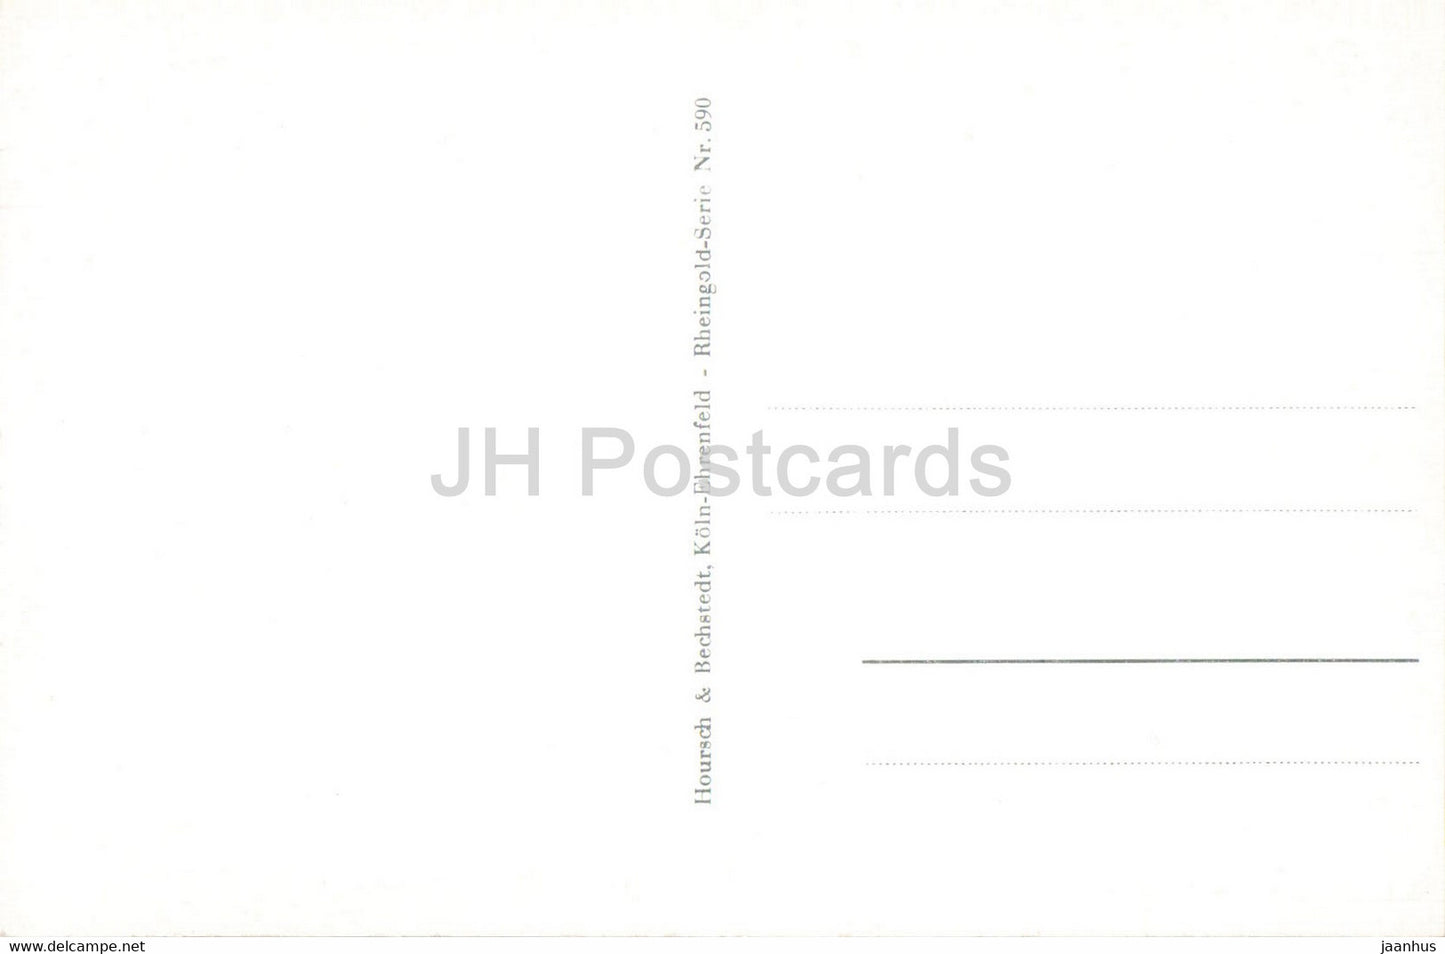 Boppard am Rhein - 590 - alte Postkarte - Deutschland - unbenutzt